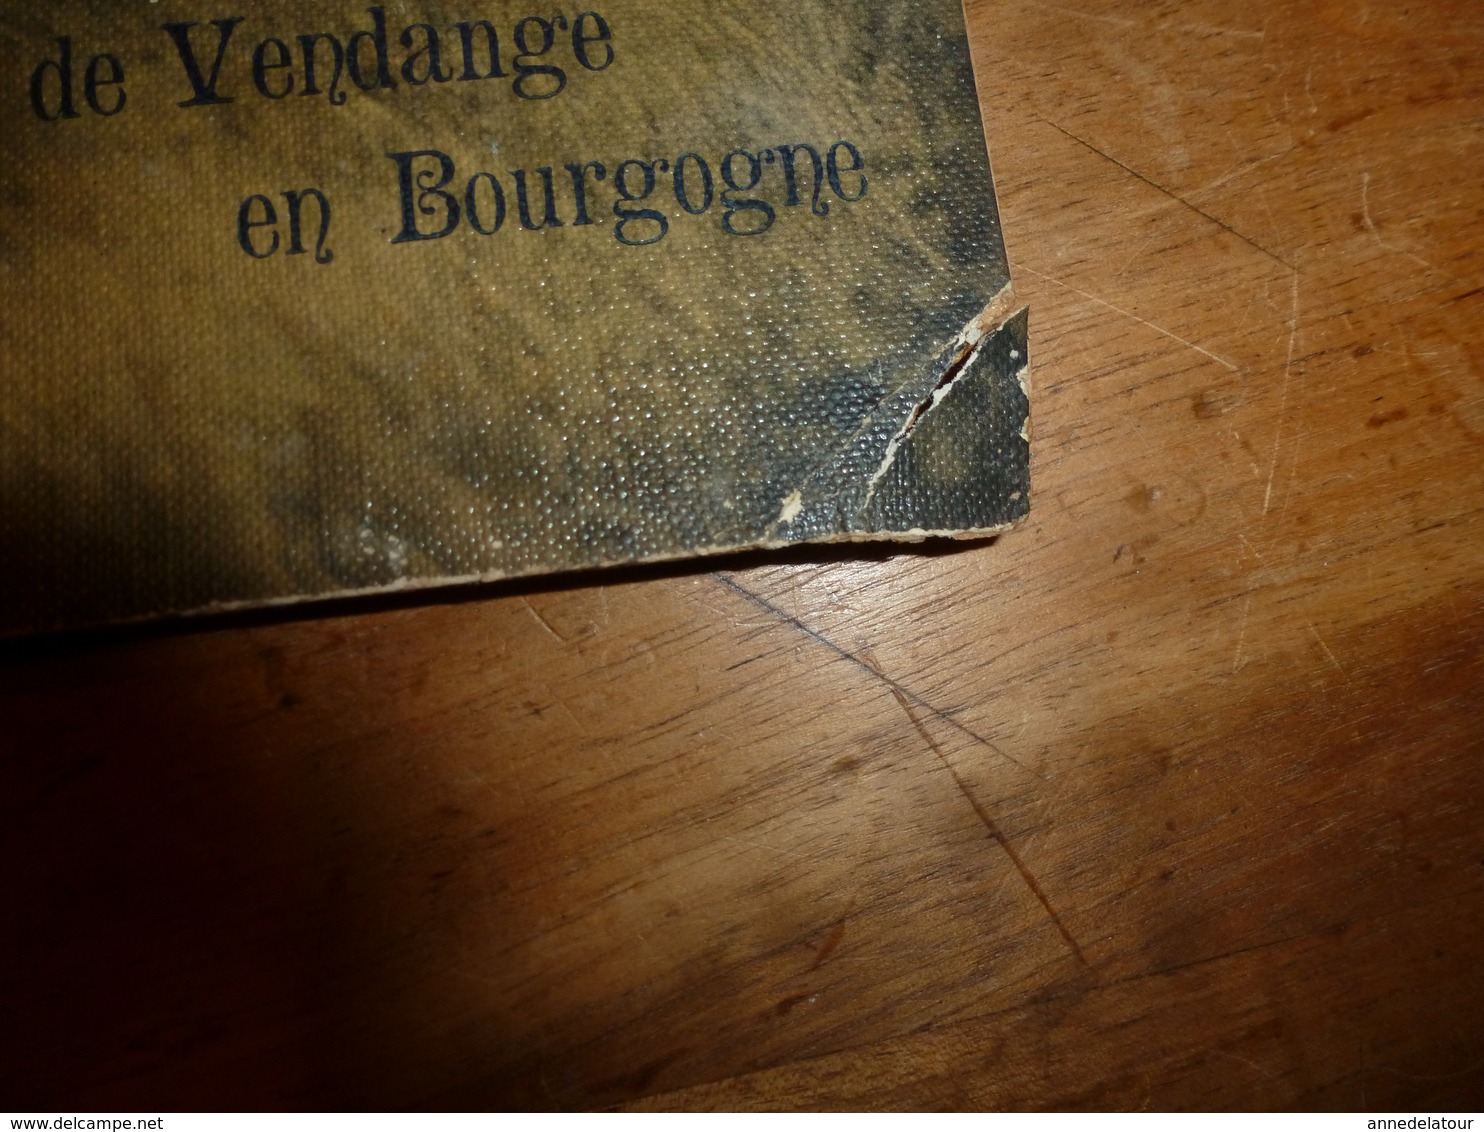 Anc. Carton publicitaire avec calendrier Liqueurs Fines  MAISON BELIN à SEMUR (Côte d'Or)  Scène vendange en Bourgogne